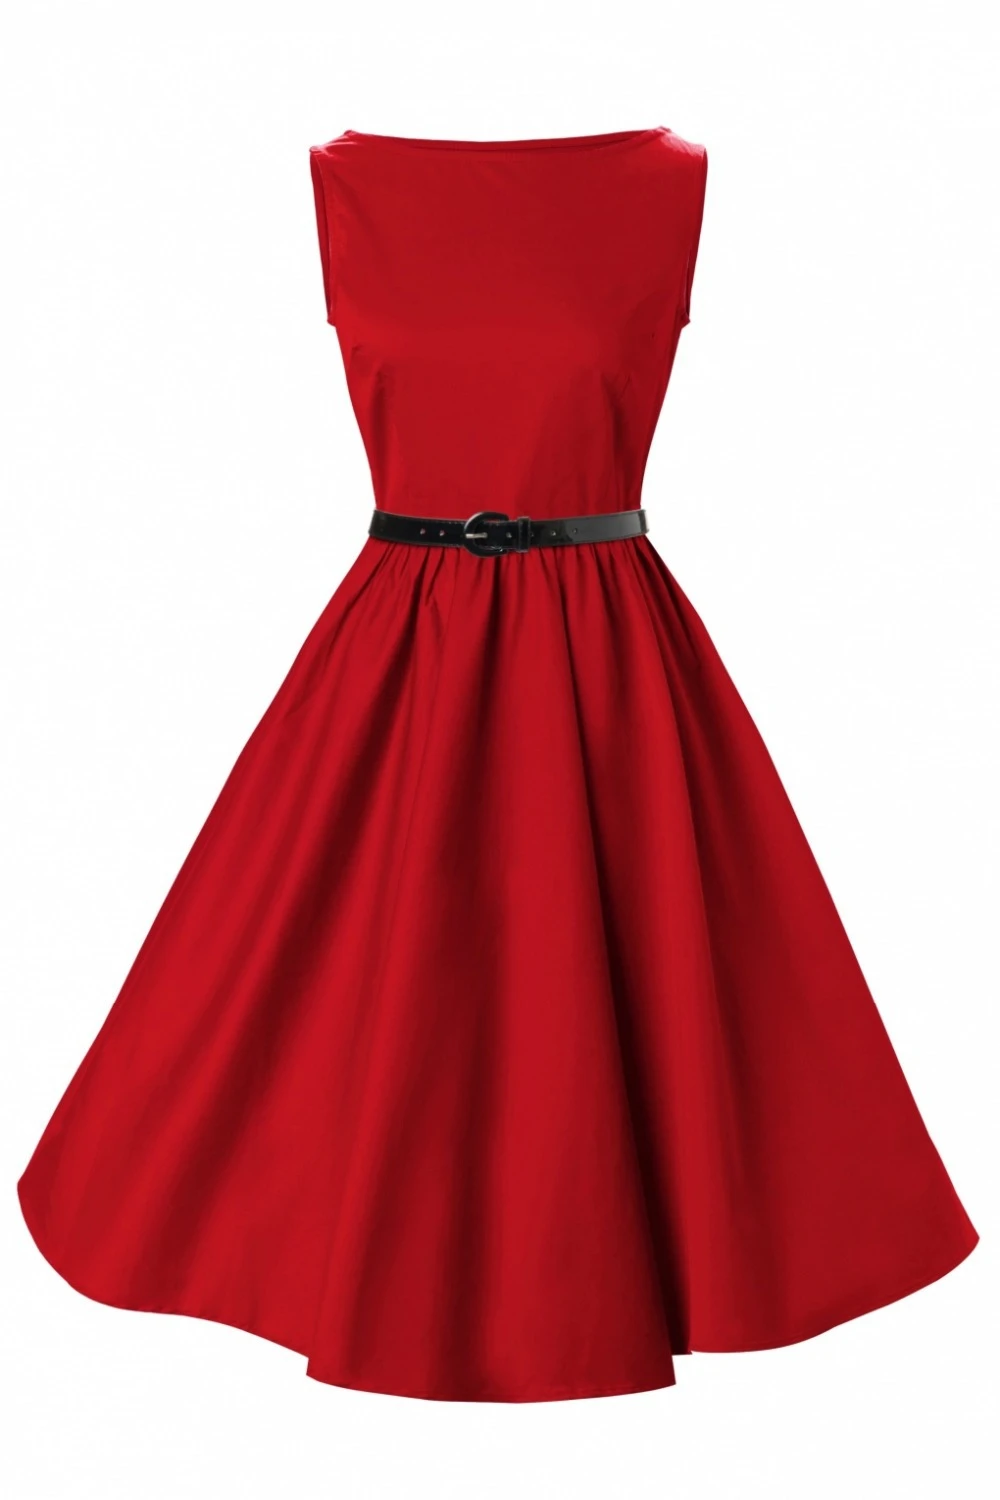 Vintage Kleider Online Red Robe Rouge Boot Neck Sleeveless Elegante Neuheit Kleid Drop Versand Kostenloser Novelty Dress Vintage Dressdresses Free Shipping Aliexpress